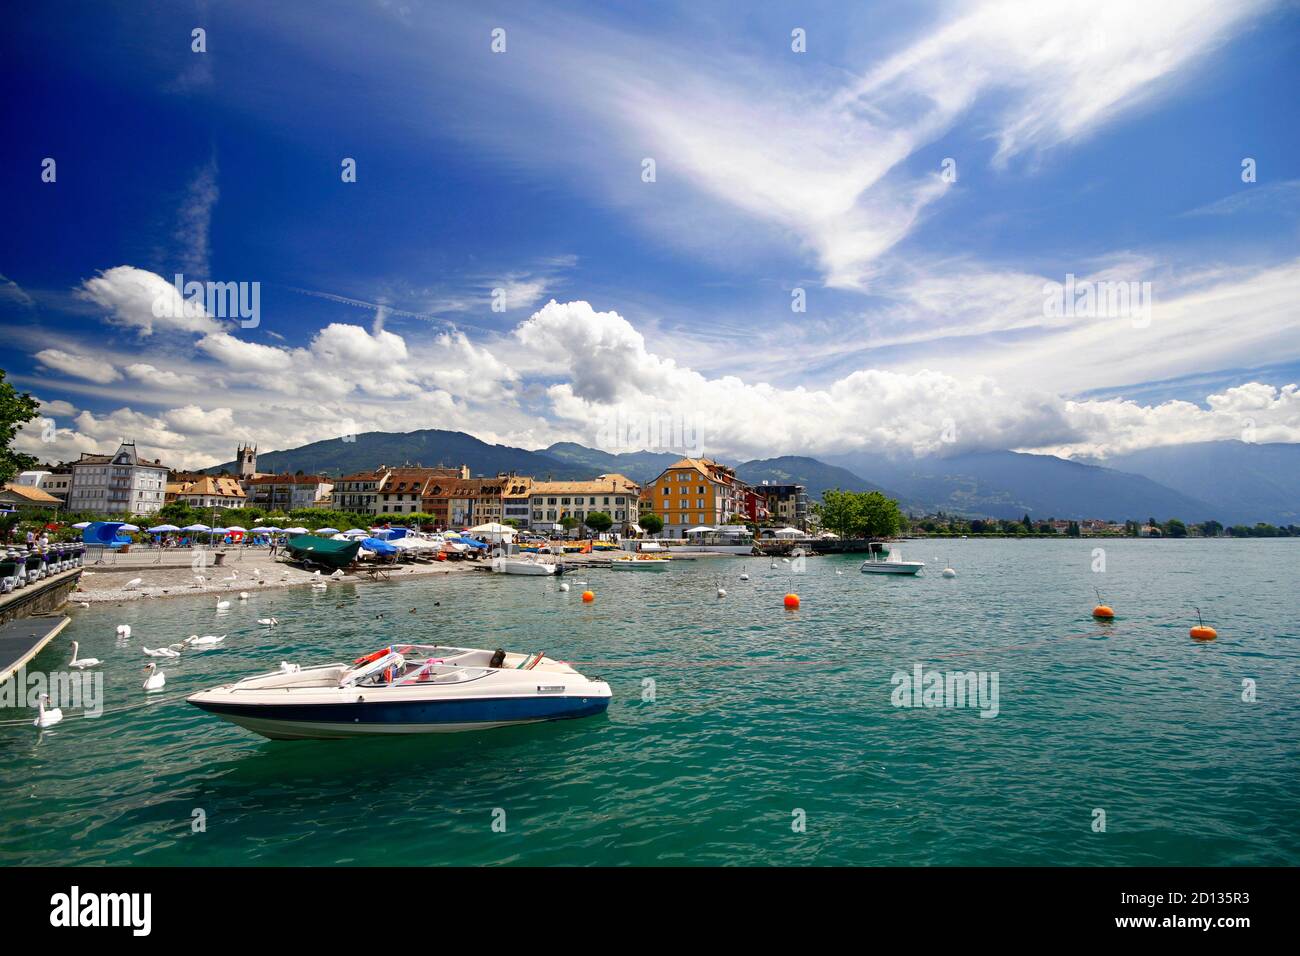 VEVEY, SWITZERLAND - Jul 15, 2016: Preciosa escena de lago y montana. Cielo bonito azul  con nubes blancas. Barca de recreo amarrada en el puerto del Stock Photo